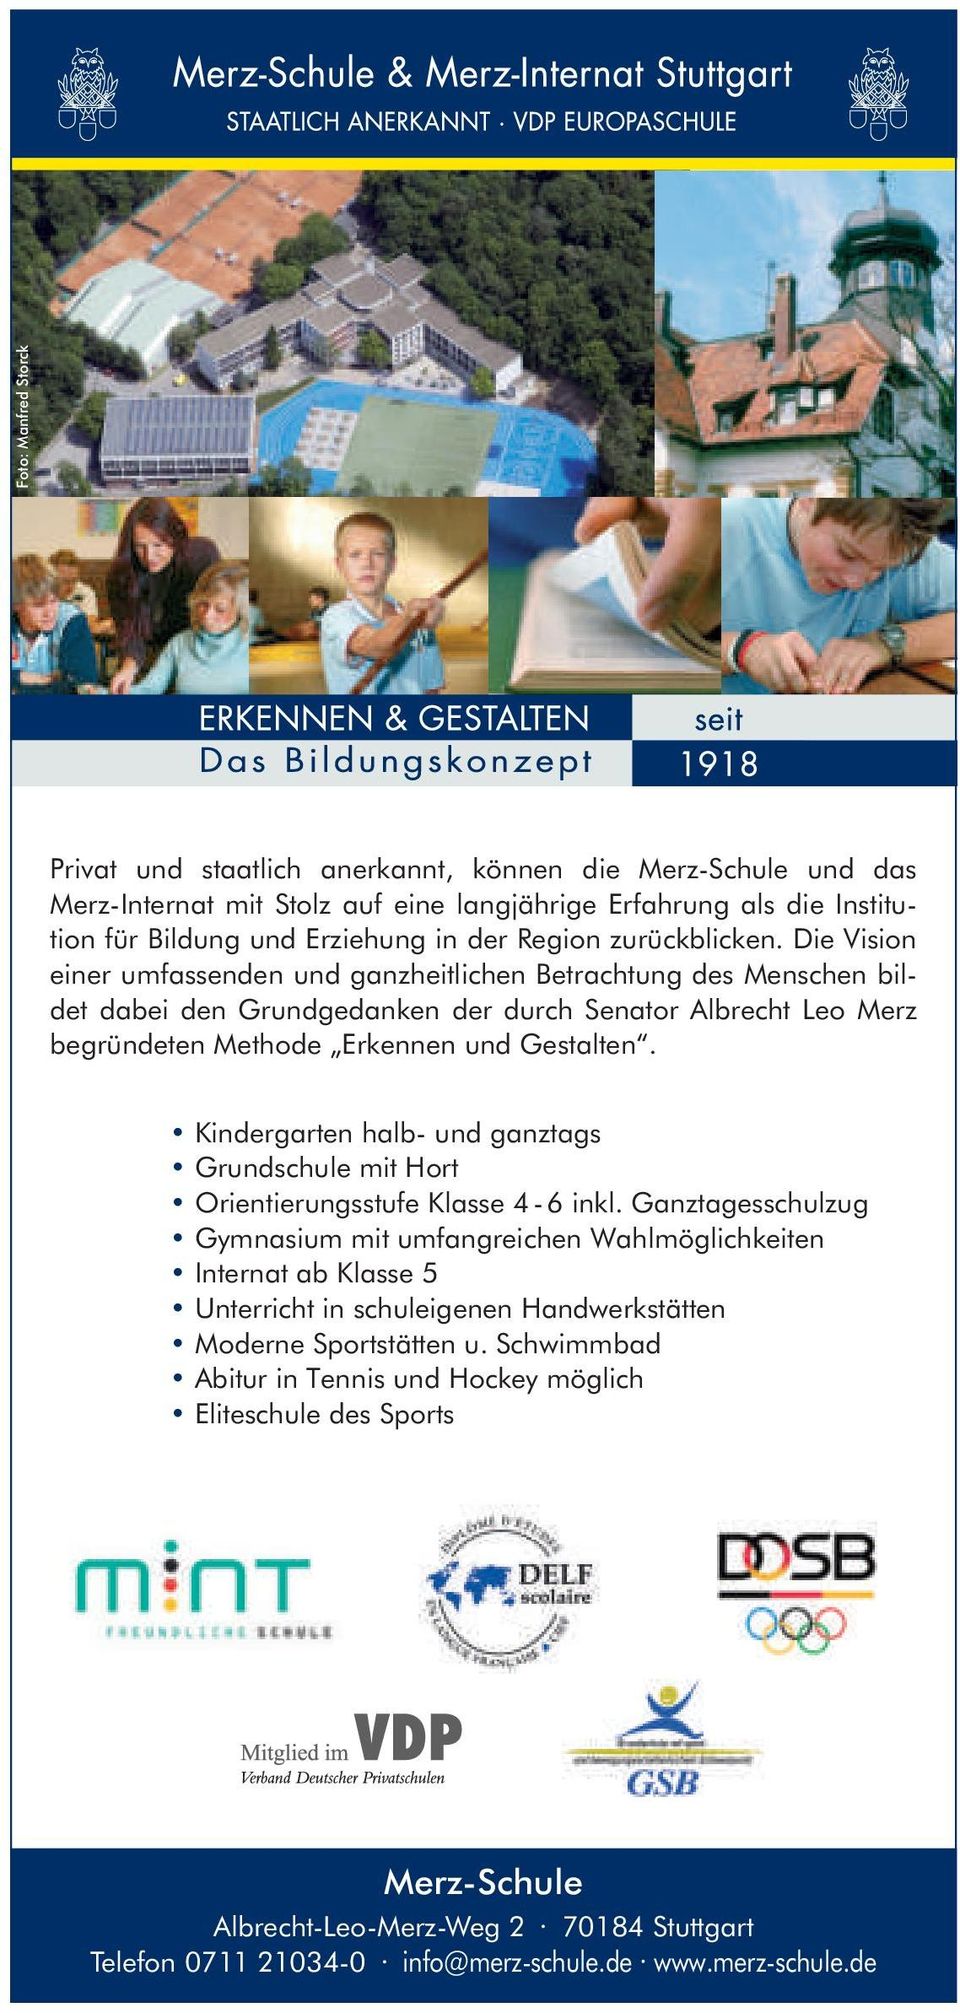 Kindergarten halb- und ganztags Grundschule mit Hort Orientierungsstufe Klasse 4-6 inkl.